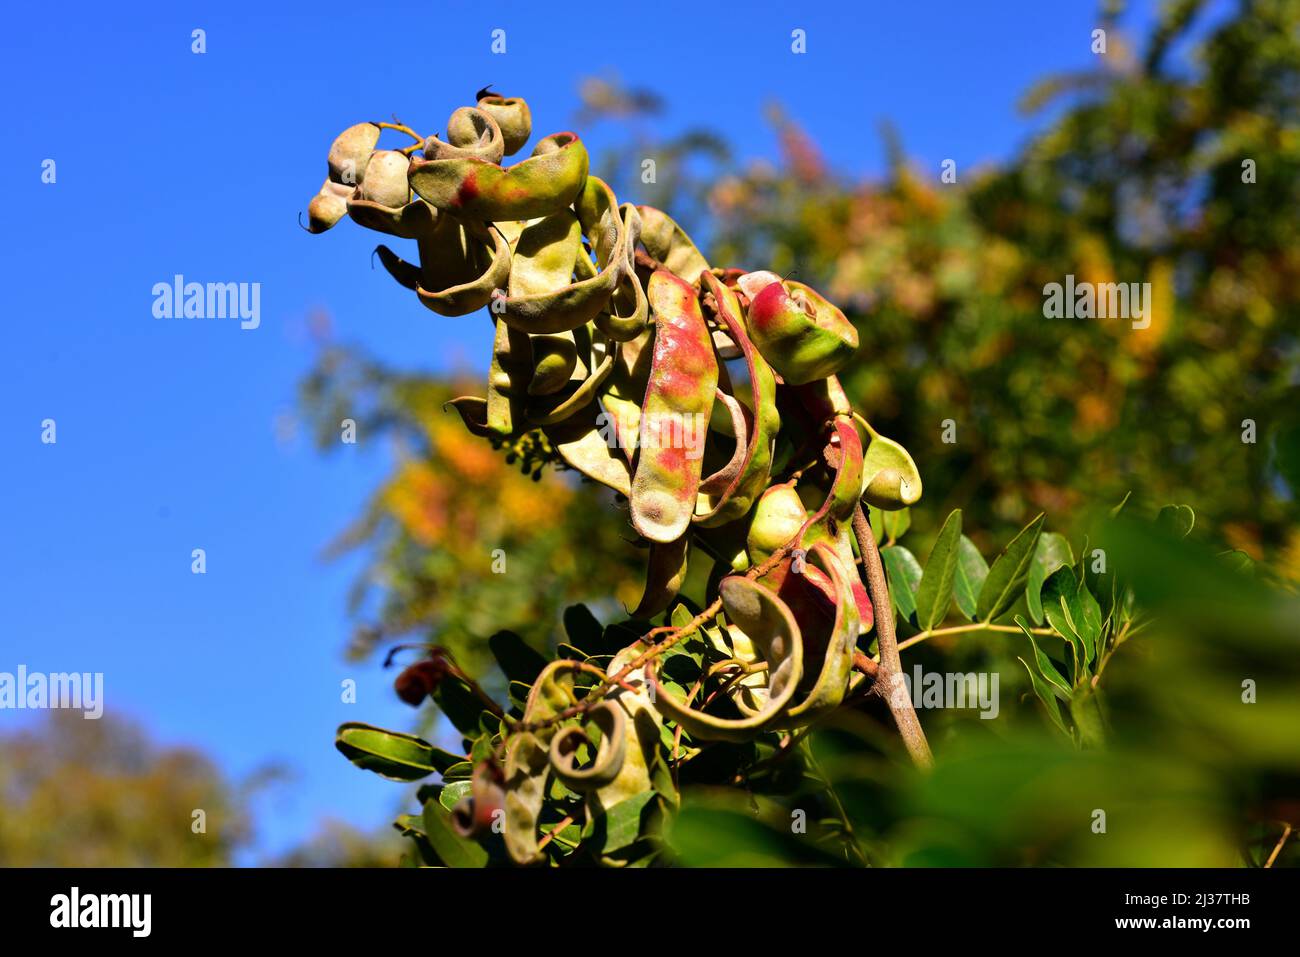 Tara o algarrobo peruano (Caesalpinia spinosa o Tara spinosa) es un árbol perenne pequeño nativo del Perú y cultivado en otros países del Sur Foto de stock